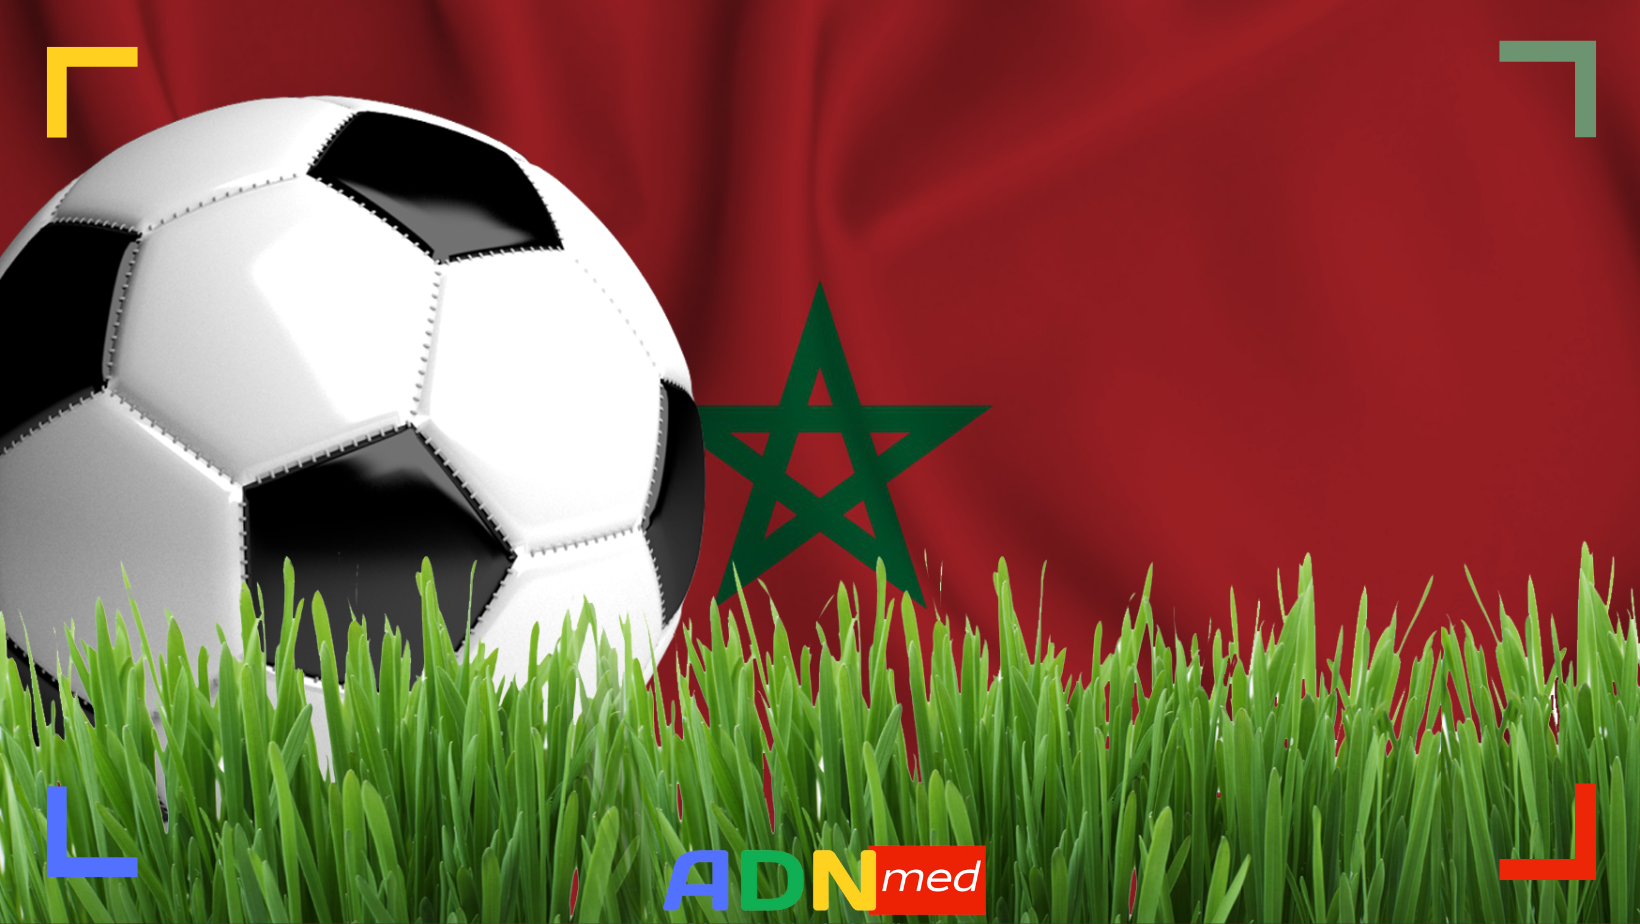 Maroc. Le Lionceaux participeront à la CAN U17 organisée en Algérie